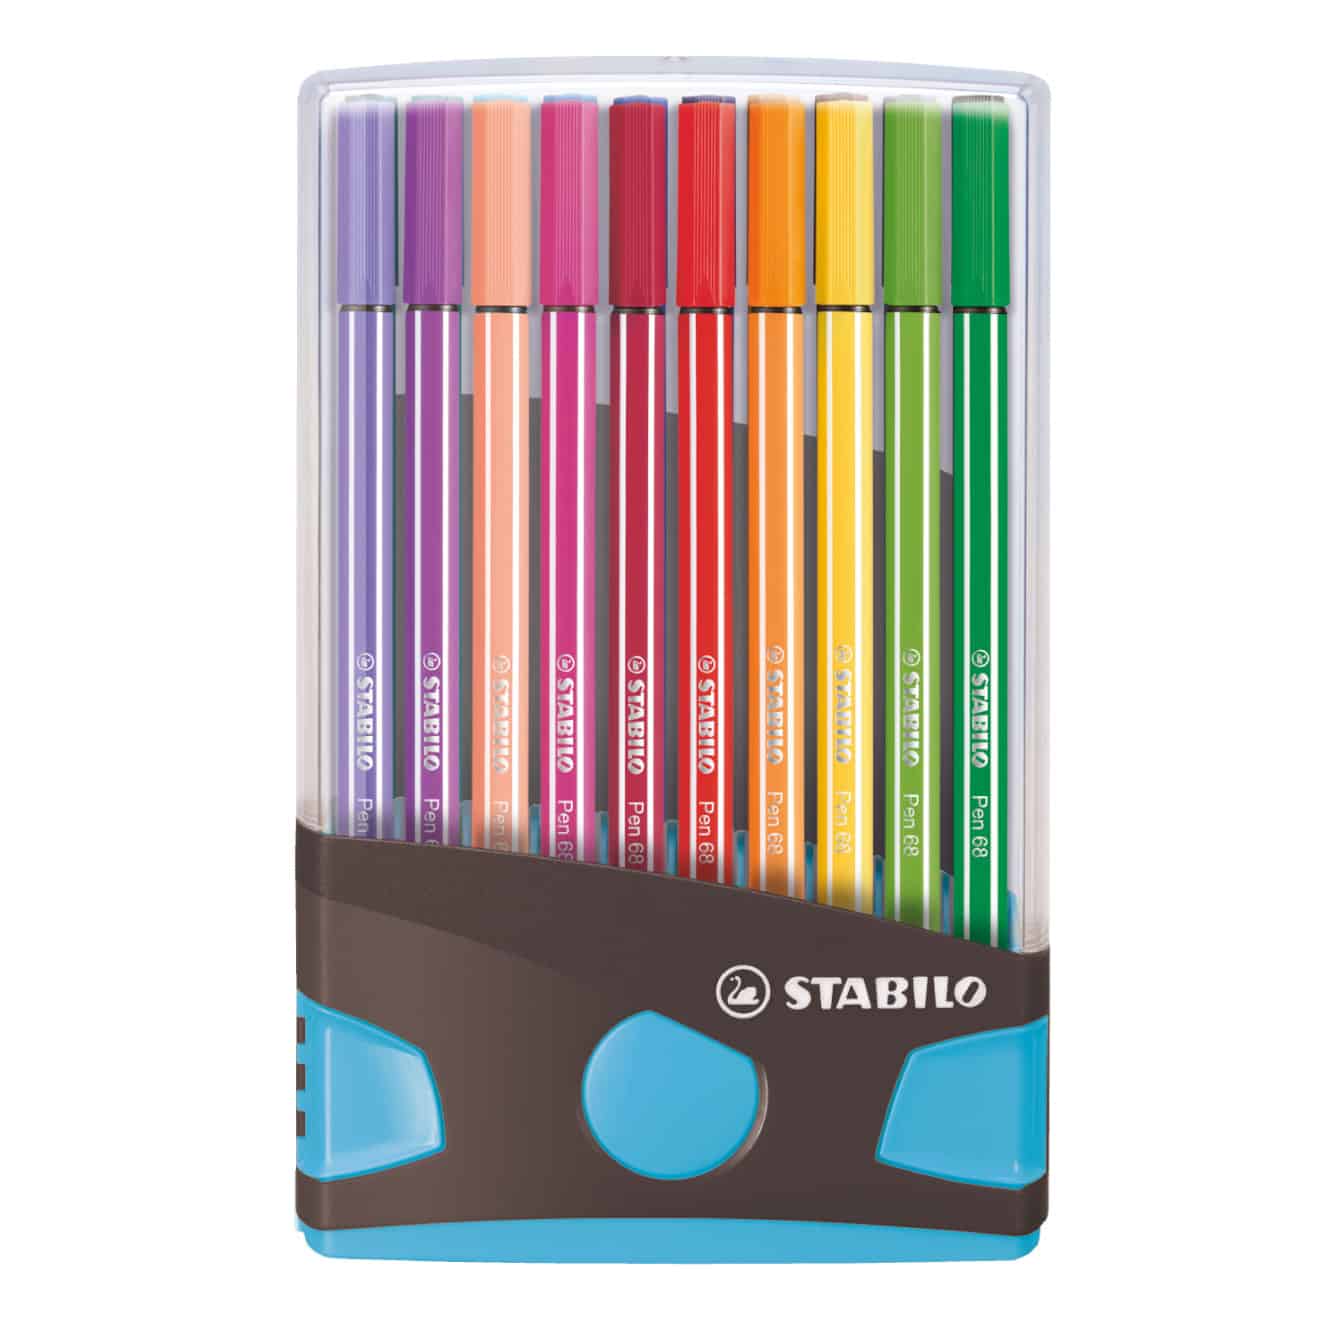 gracht Oneffenheden Normaal STABILO Pen 68 viltstift Colorparade 20 kleuren - Antraciet Blauw